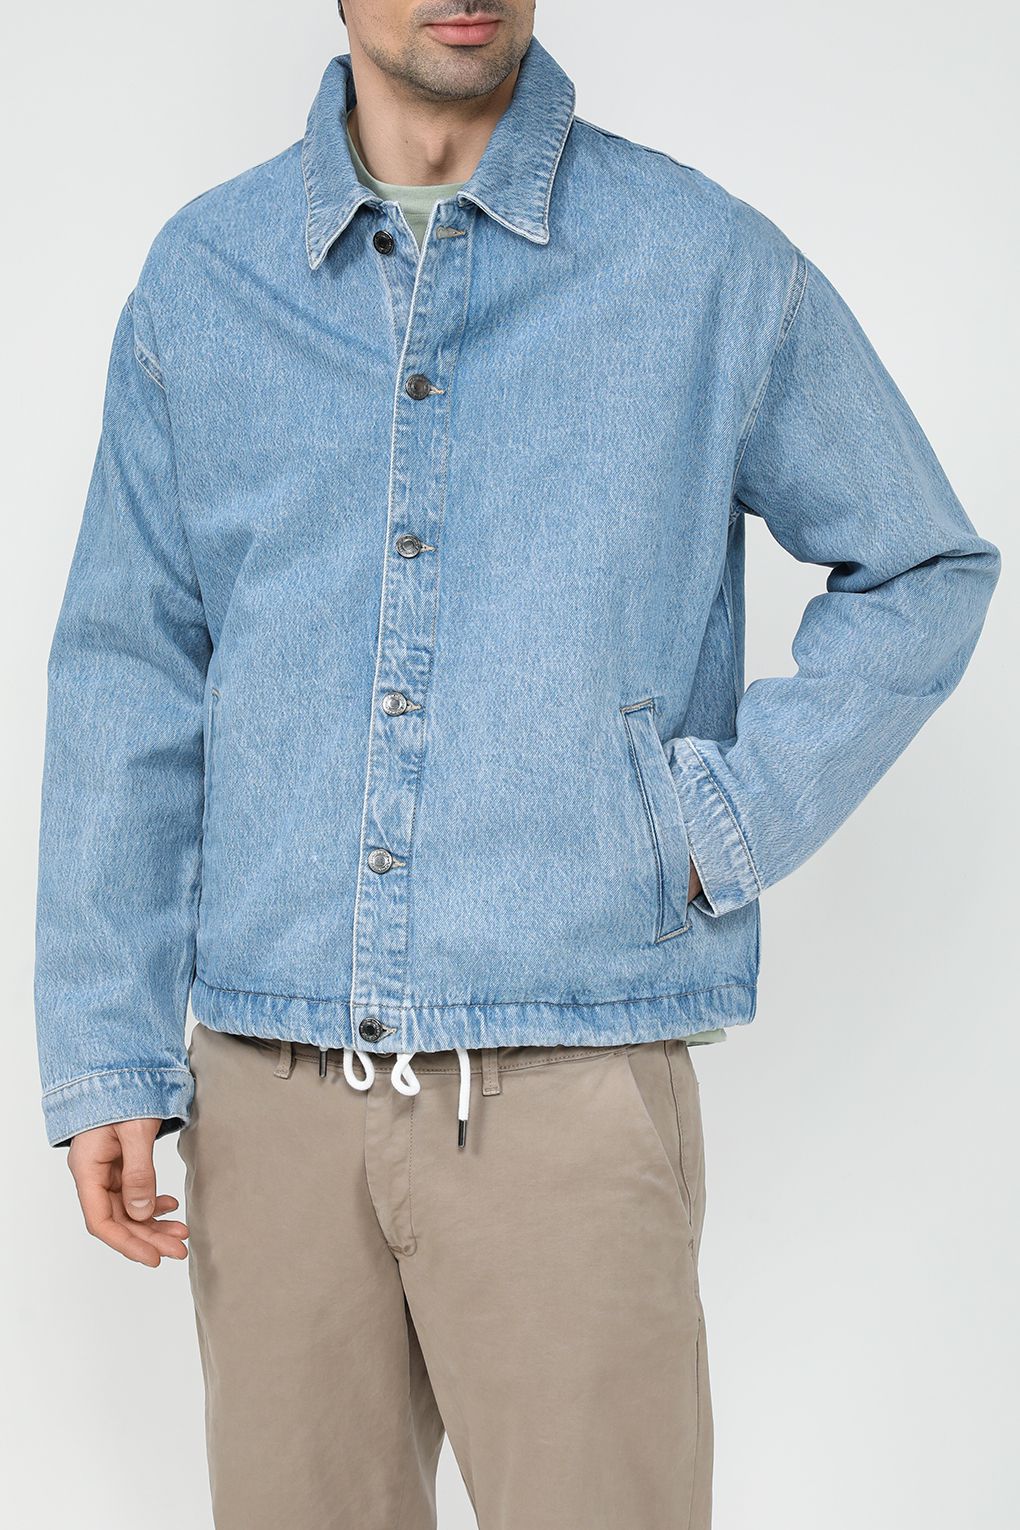 Джинсовая куртка мужская COLORPLAY CP24029340-005 синяя 46 RU